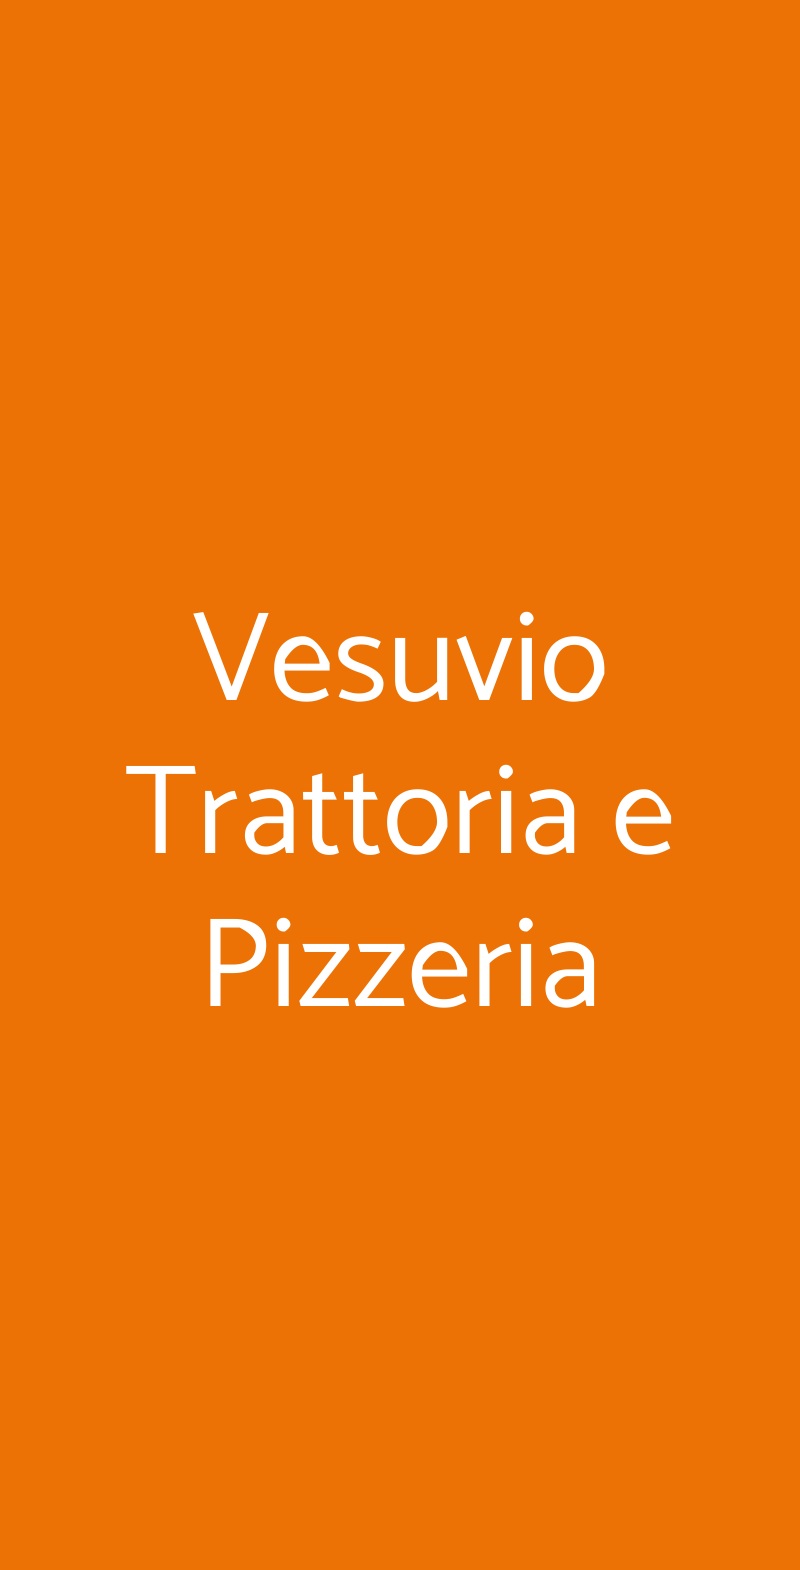 Vesuvio Trattoria e Pizzeria Napoli menù 1 pagina